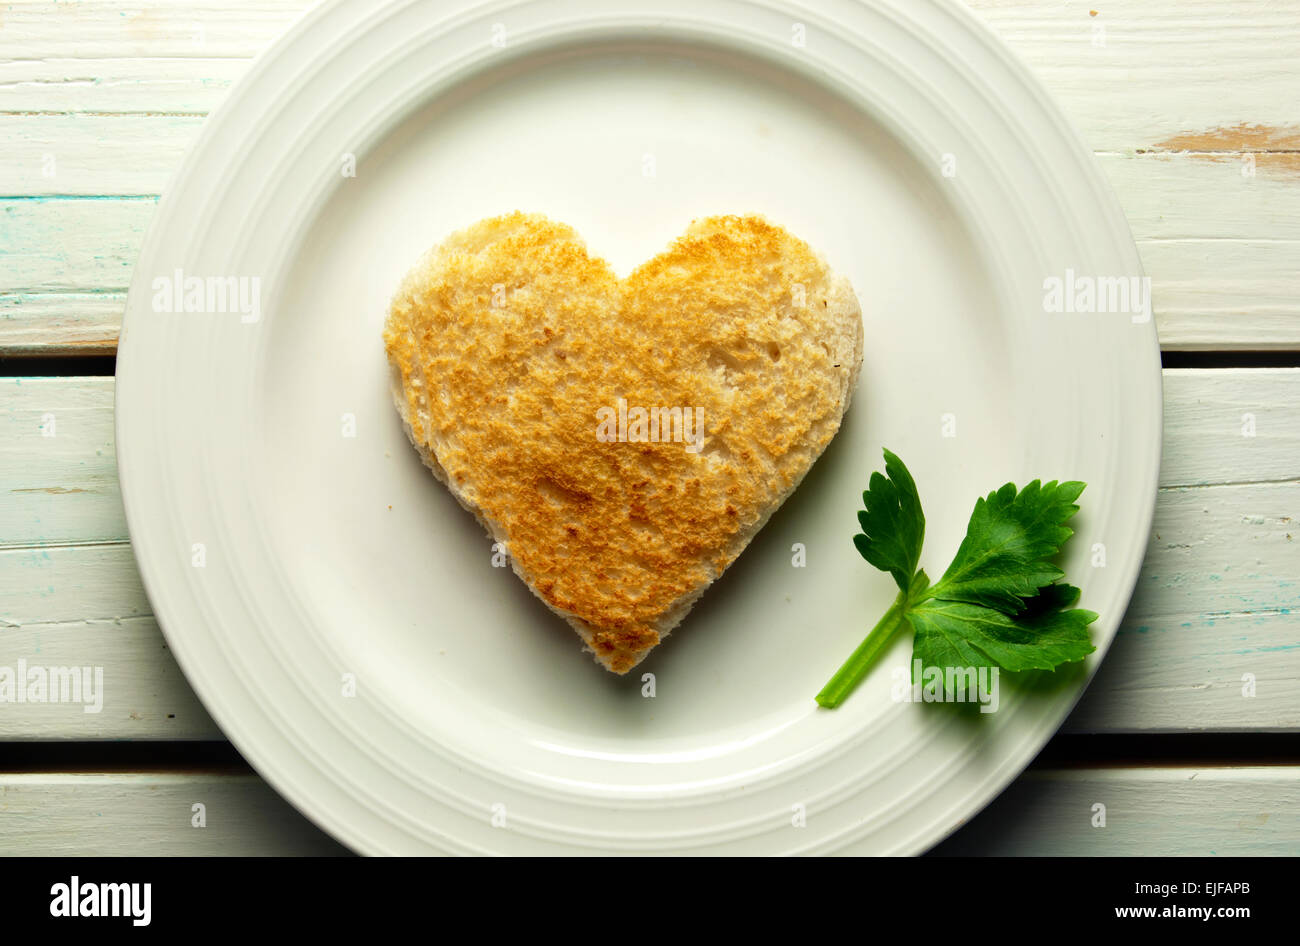 Heart shape toast on a plate with celery leaf Stock Photo